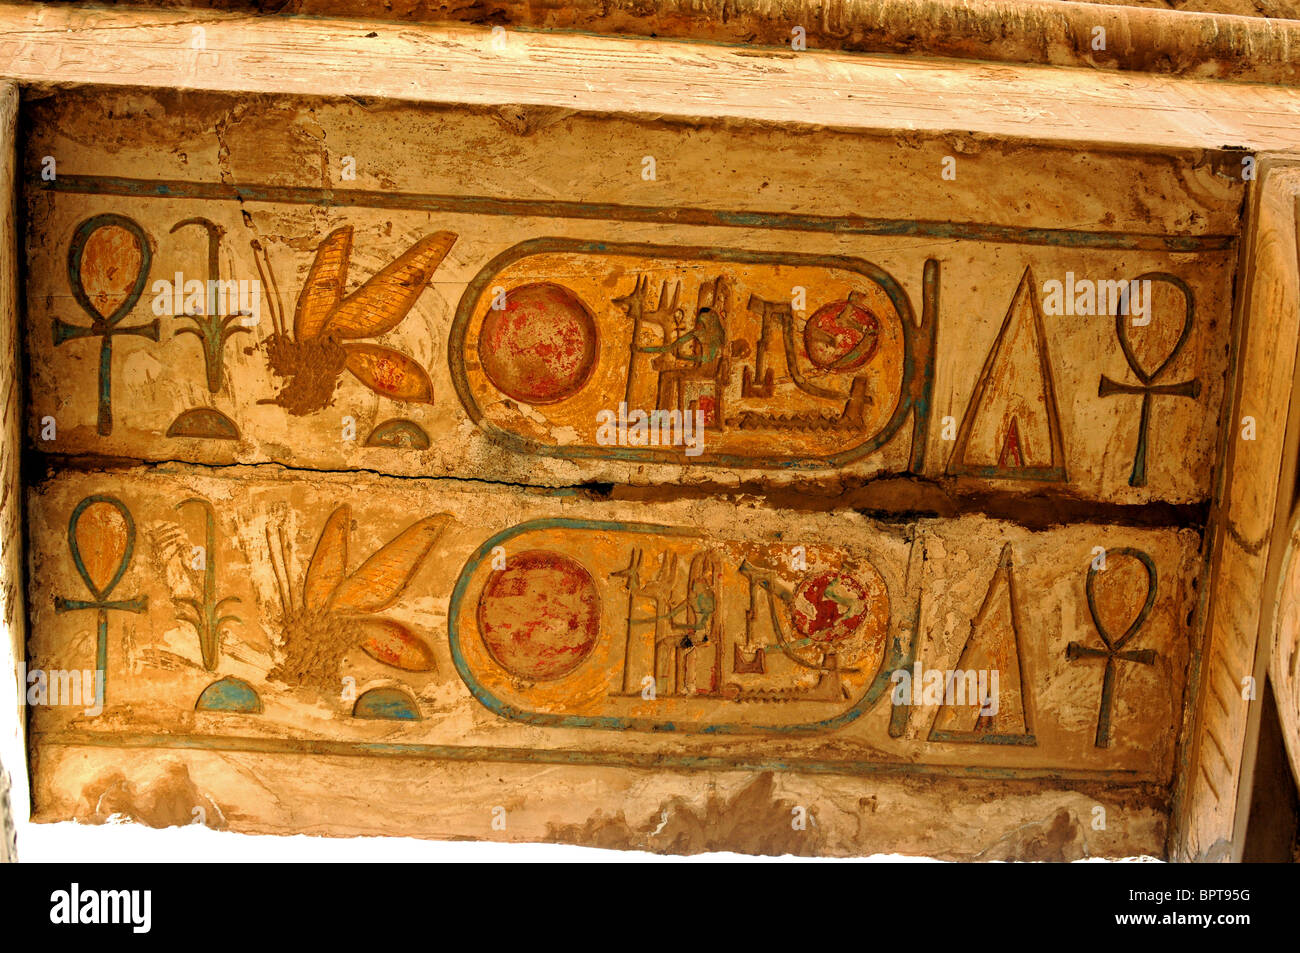 Tempio di Karnak Luxor Egitto. Dipinto kartushs alcuni 2500 anni e ancora altamente colorato. Karnak, Egitto. Foto Stock